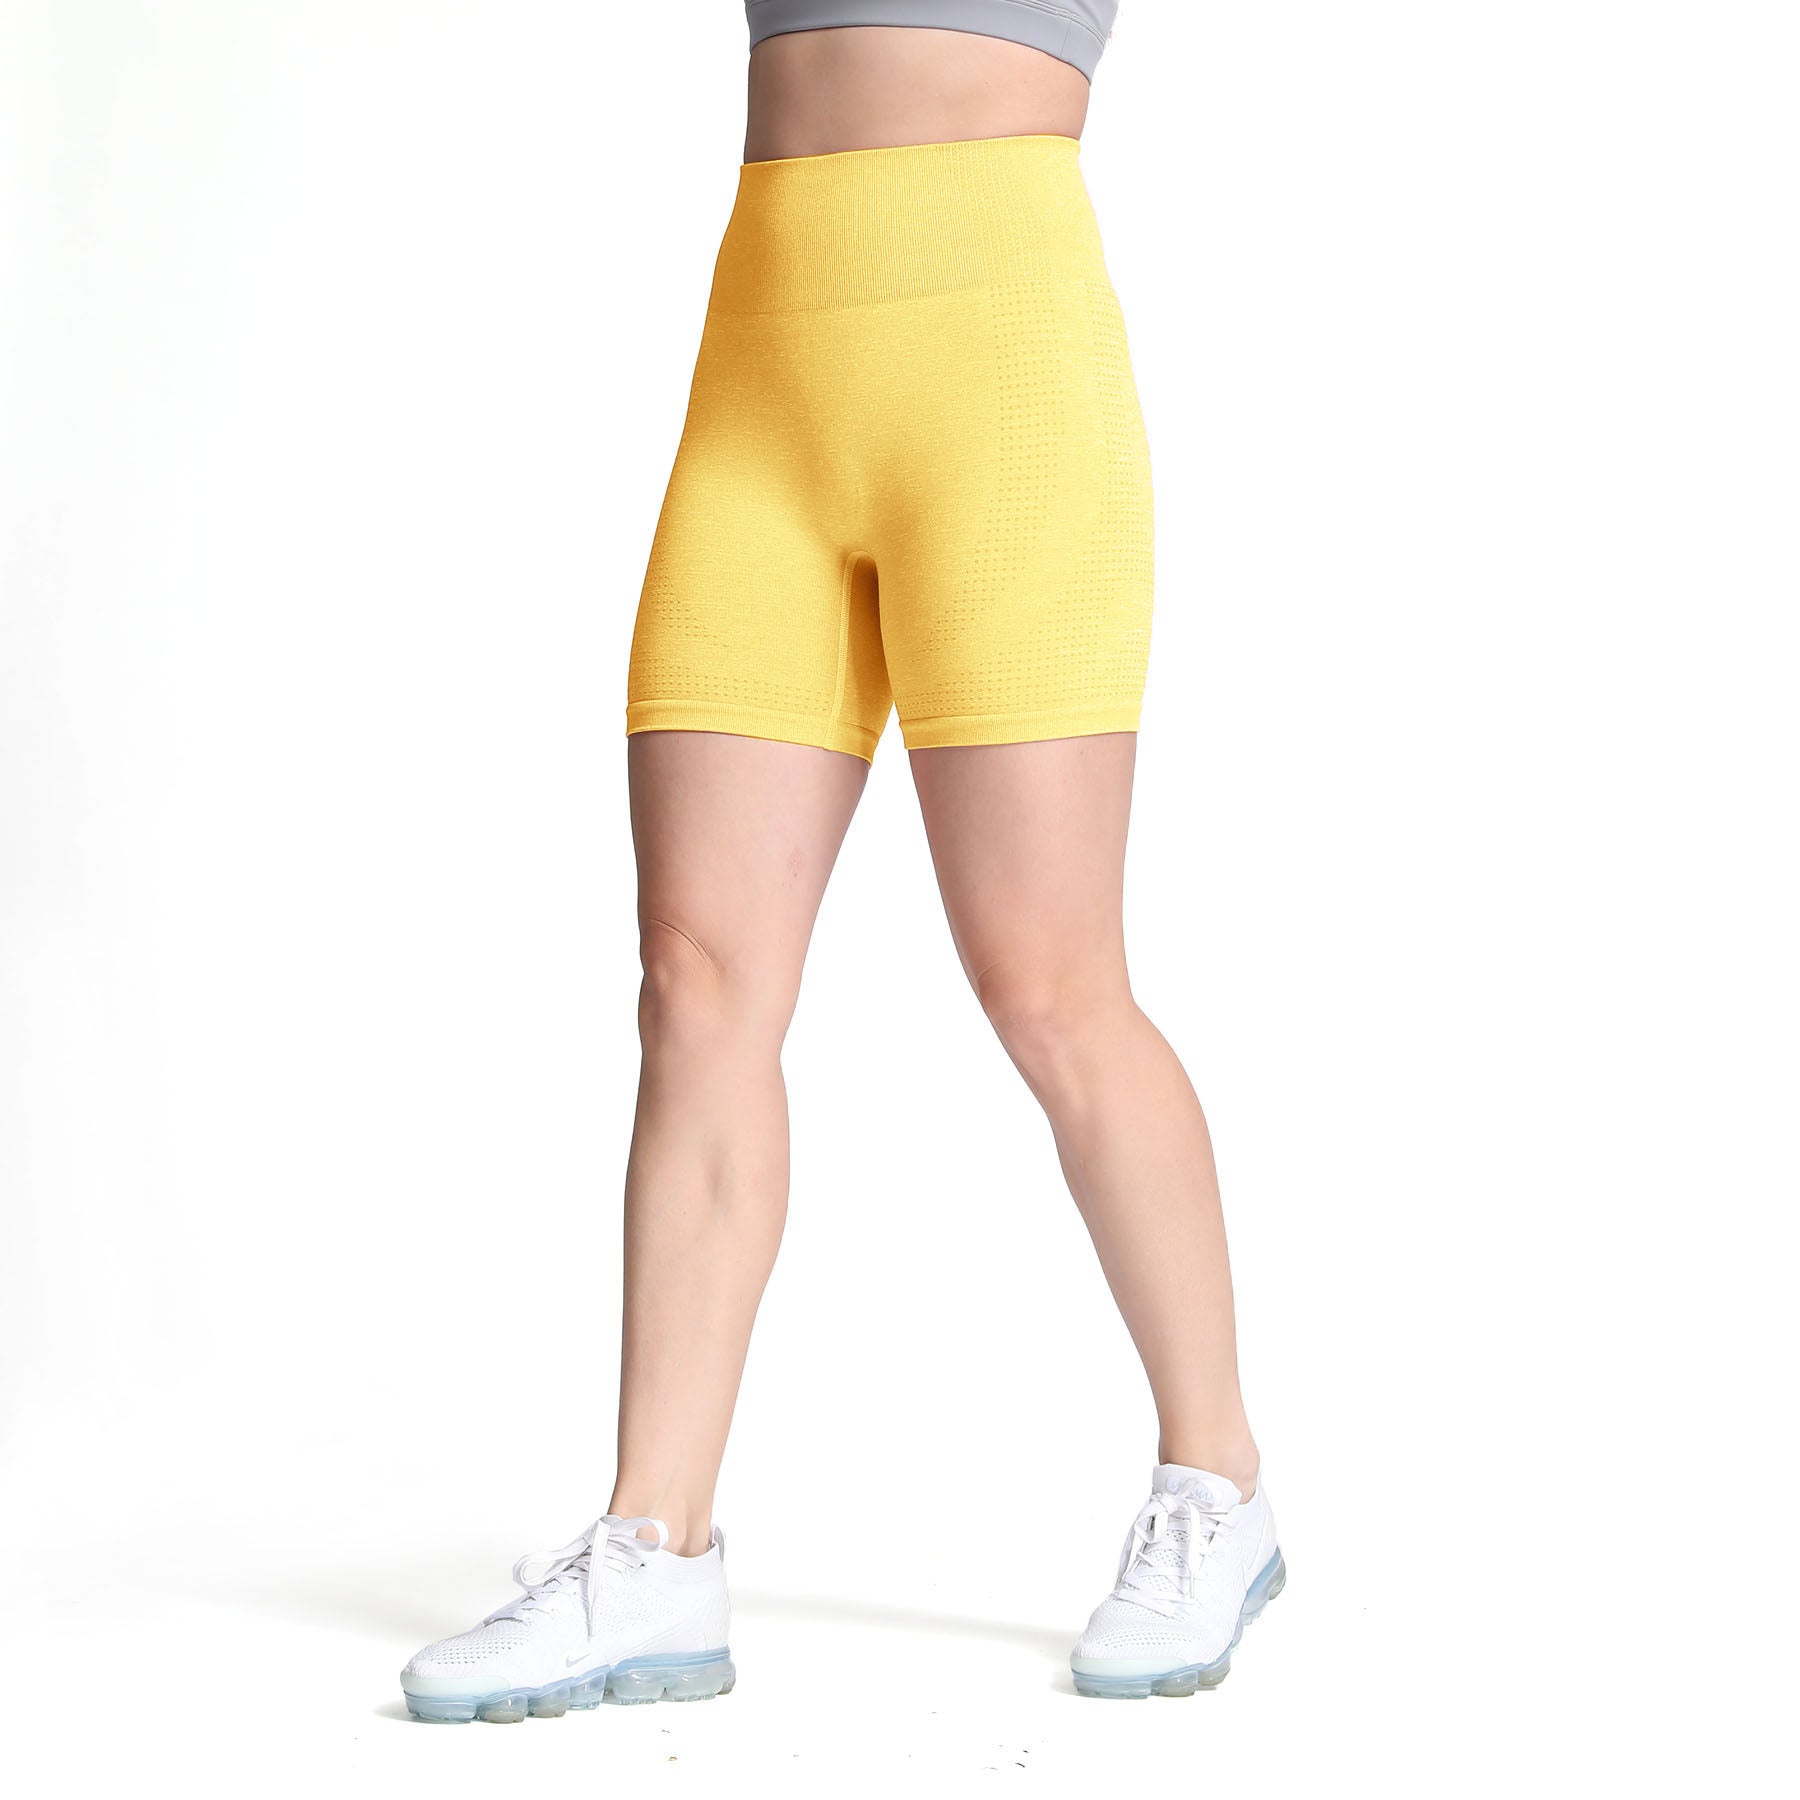 Aoxjox Vital 1.0 & 2.0 Seamless Biker Shorts for Women High Waist